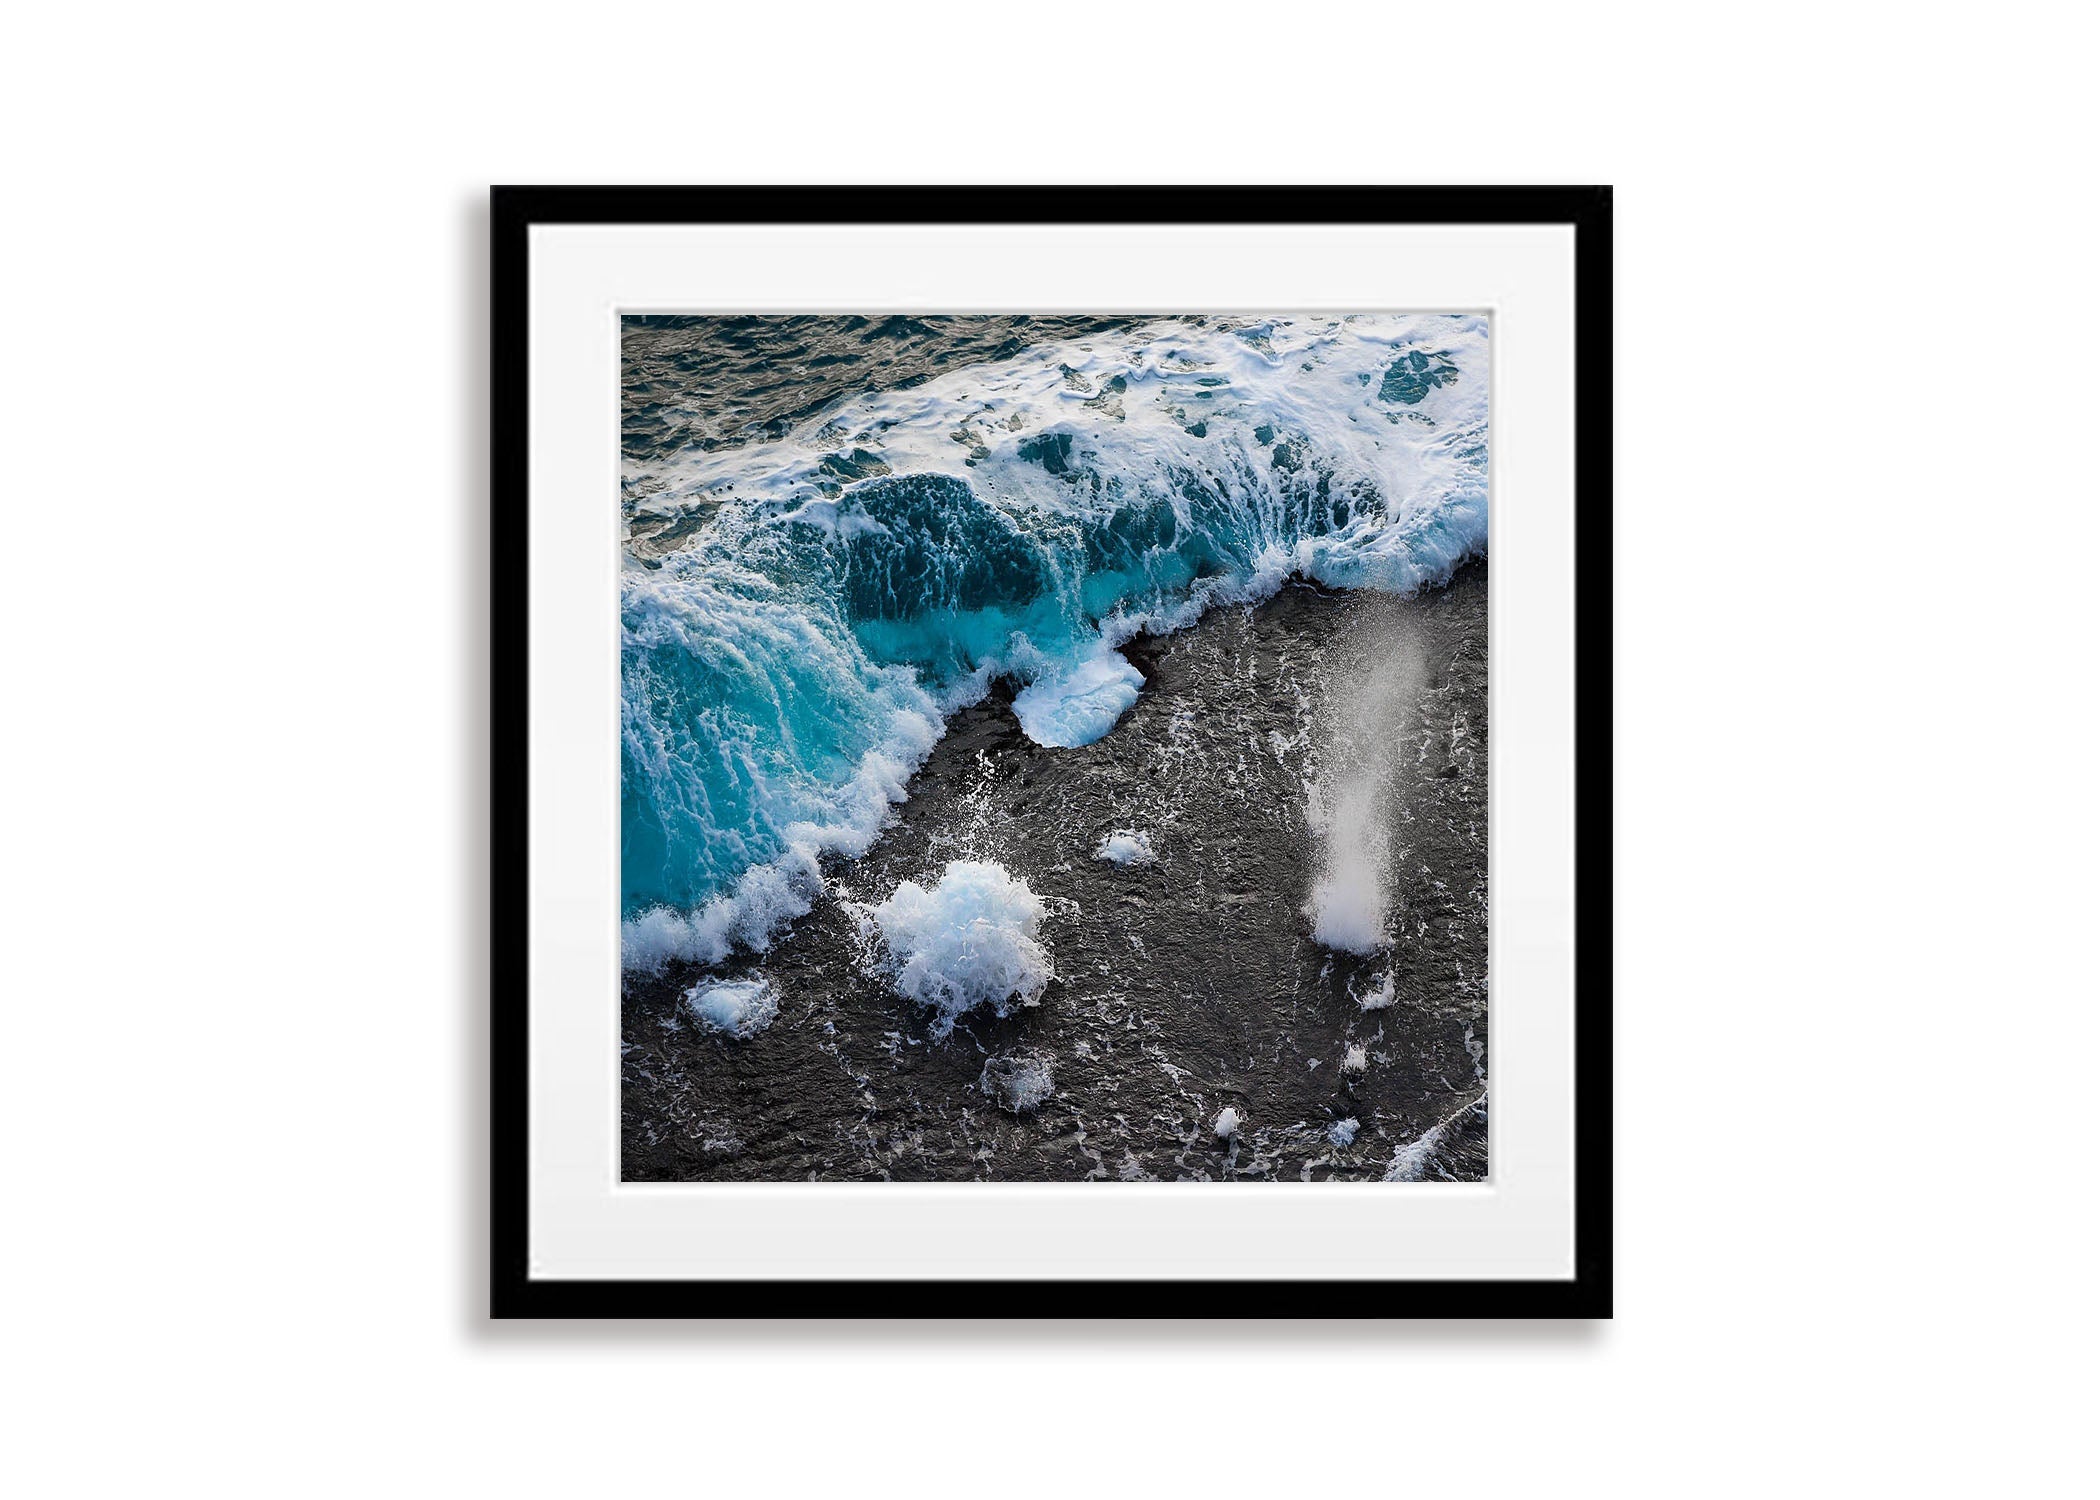 Bubbling Seas #2, Eyre Peninsula